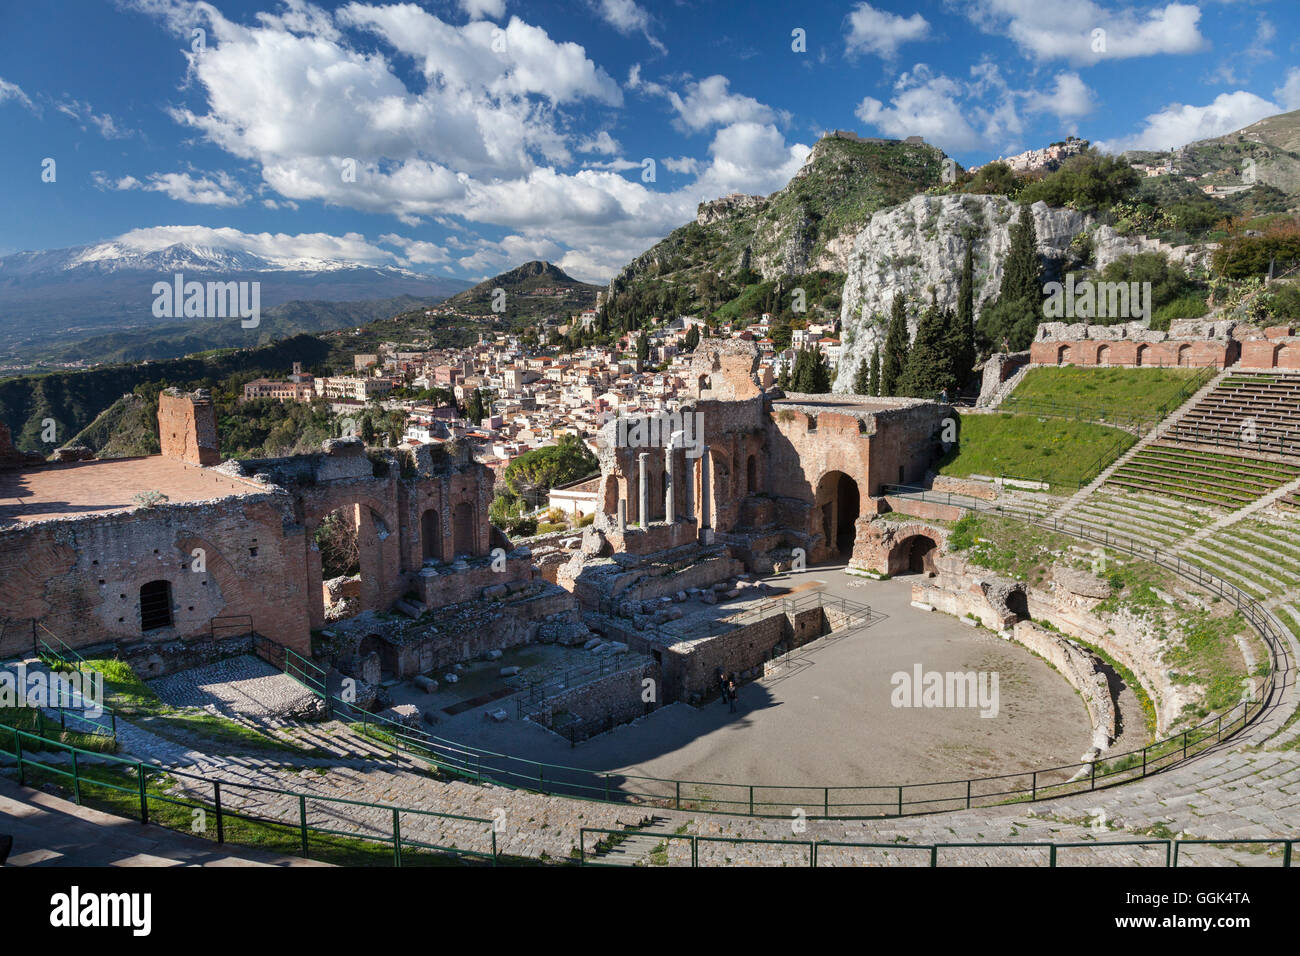 Teatro Greco, Taormina, Messina, Sicily, Italy Stock Photo - Alamy